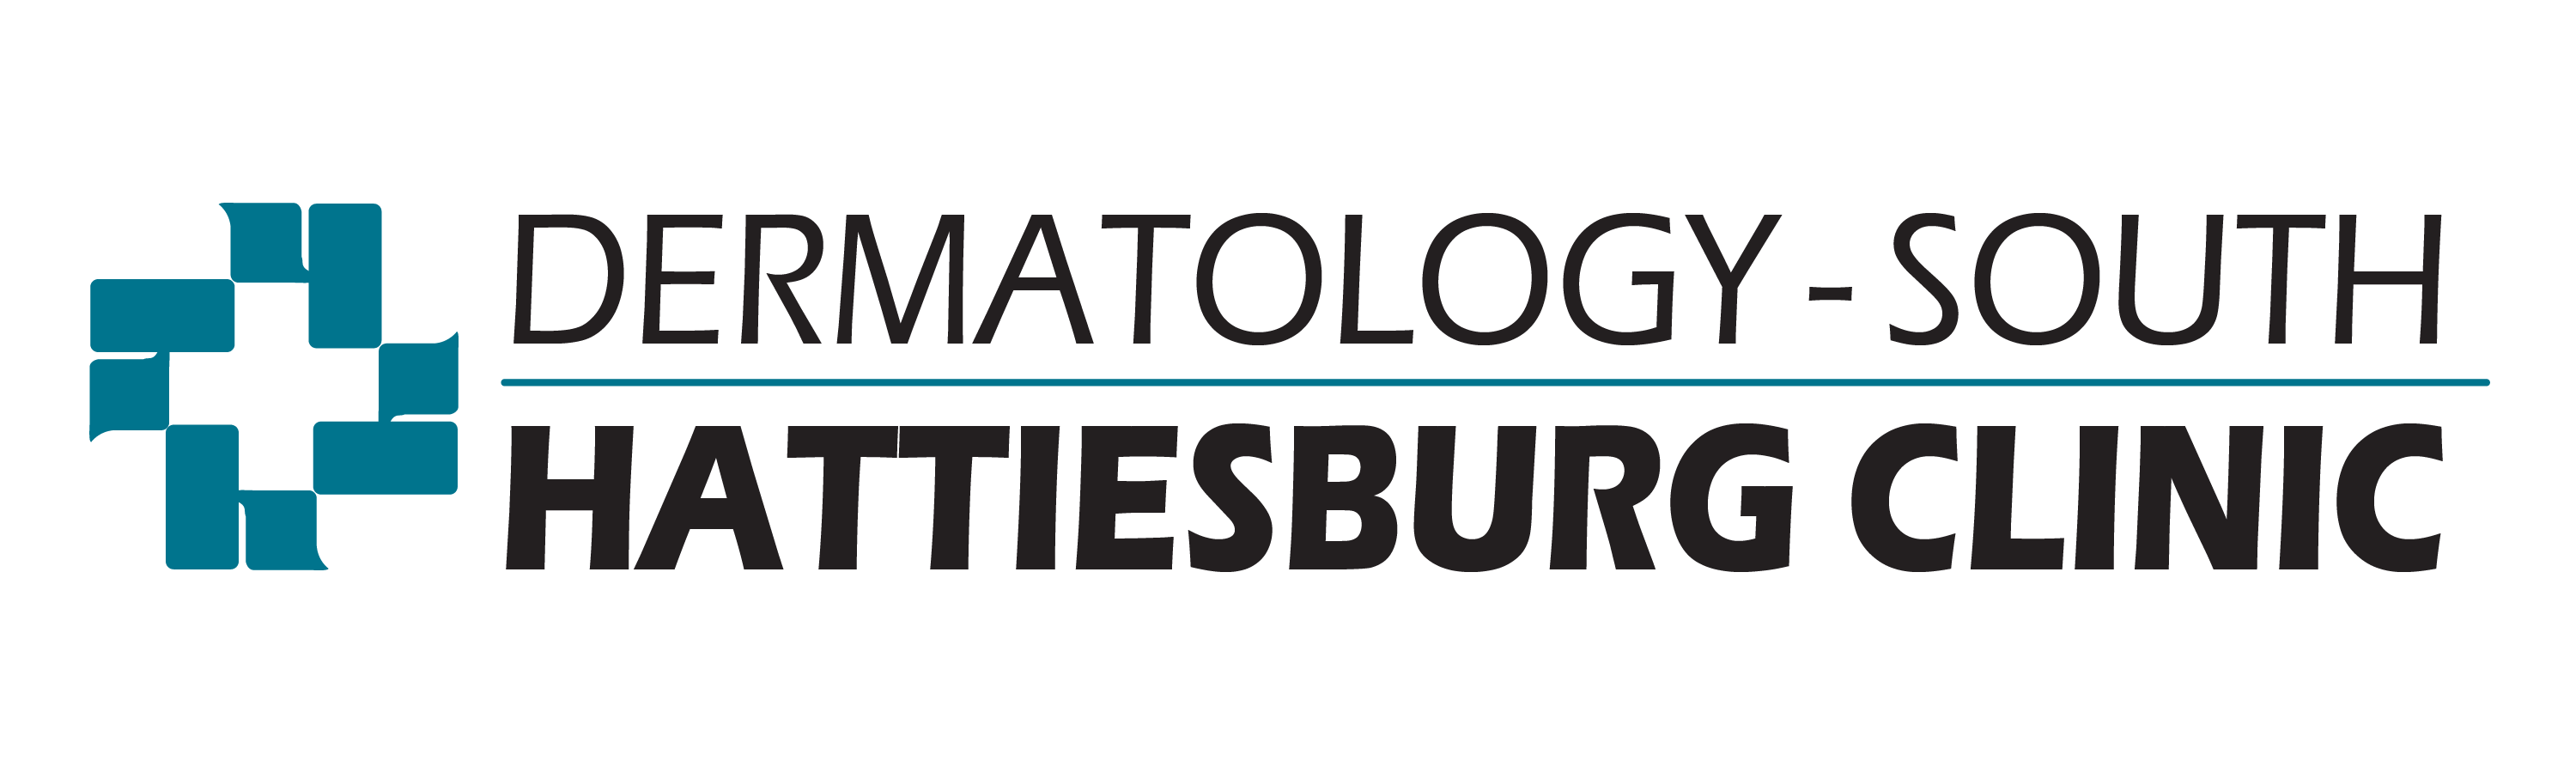 Dermatology - South logo